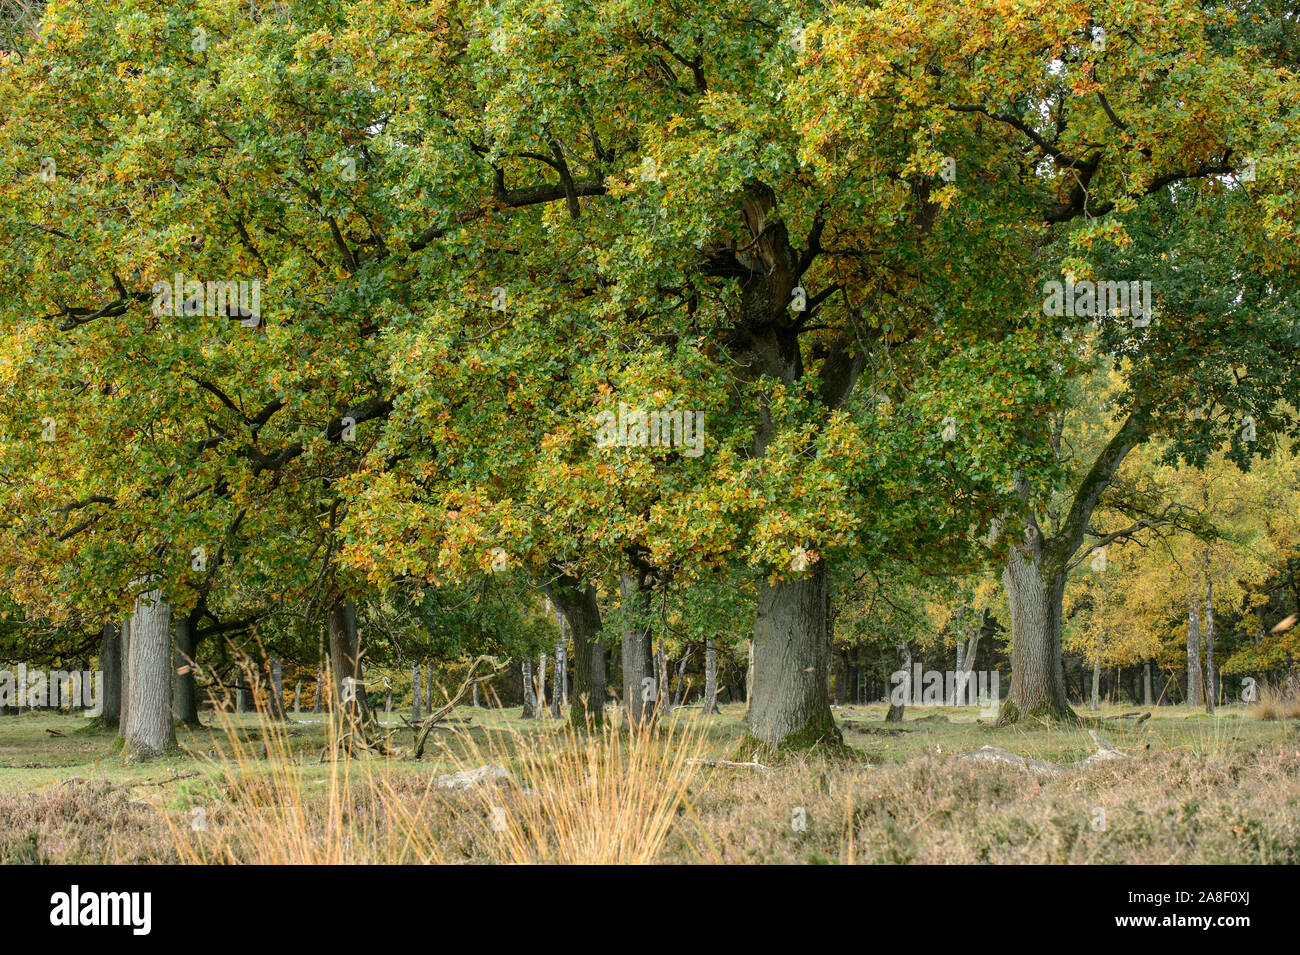 Eichen mit Farben des Herbstes. Dieses Bild ist Teil eines 10-Serie der gleichen Lage in den verschiedenen Jahreszeiten. Stockfoto